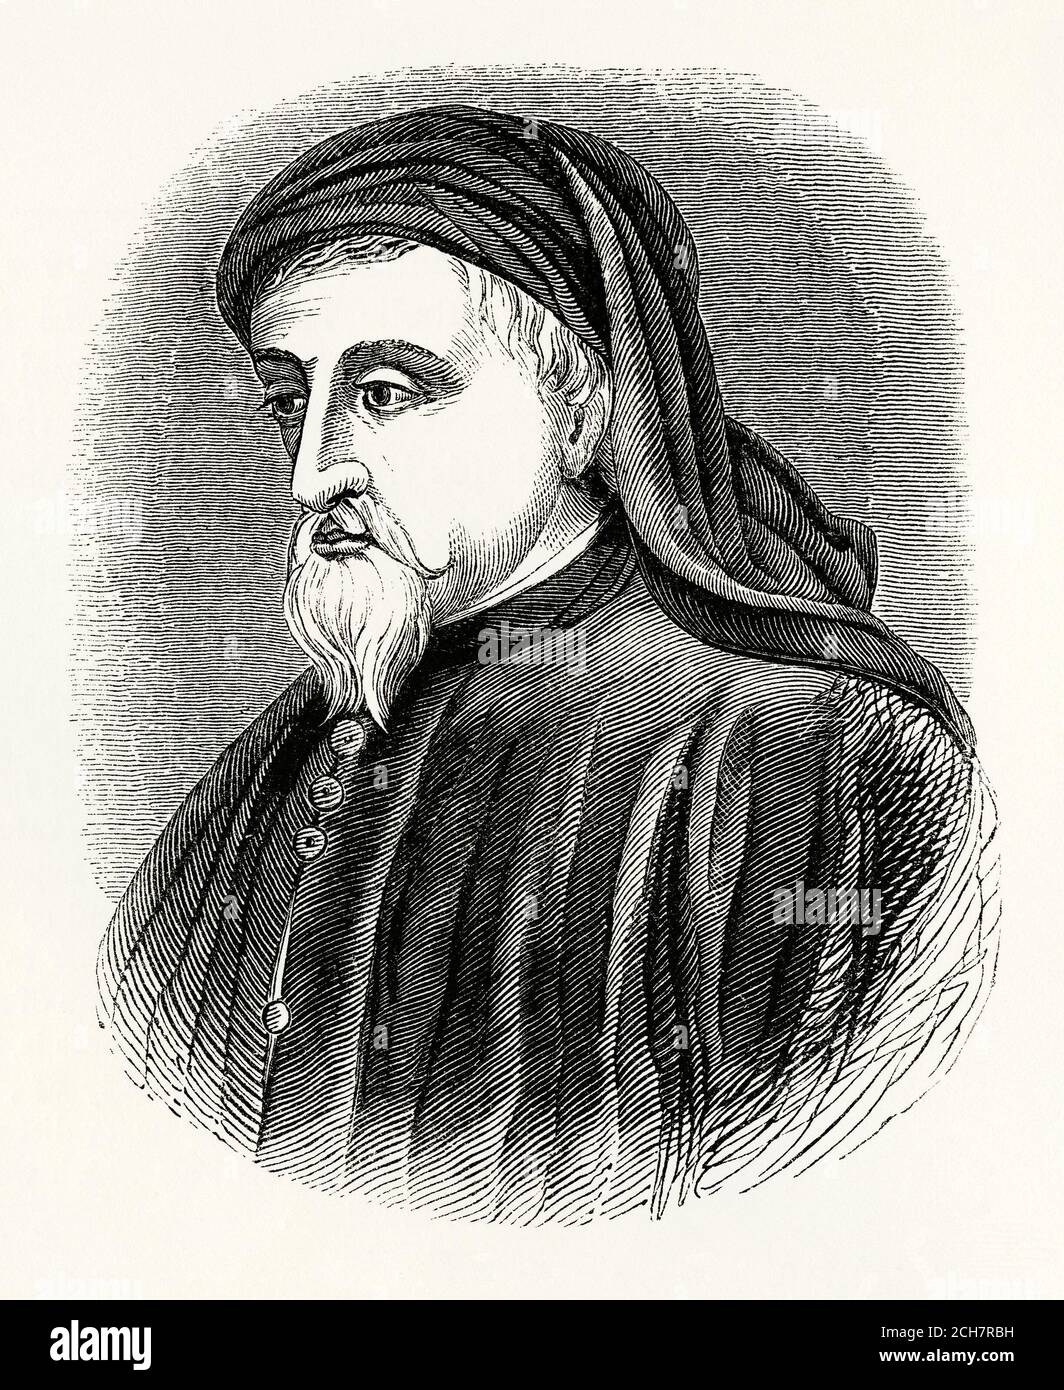 Une ancienne gravure de Geoffrey Chaucer (c. 1340s –1400). Il était poète et auteur, largement considéré comme le plus grand écrivain anglais du Moyen-âge et il est plus connu pour les "Canterbury Tales". Il a été le premier écrivain à être enterré dans ce qui s'appelle depuis le coin des poètes à l'abbaye de Westminster. Chaucer était aussi philosophe et astronome. Il a fait carrière dans la fonction publique en tant que diplomate et est membre du Parlement. Il a écrit de manière célèbre dans le "violon anglais" à une époque où les langues écrites dominantes dans le pays étaient toujours le français et le latin. Banque D'Images